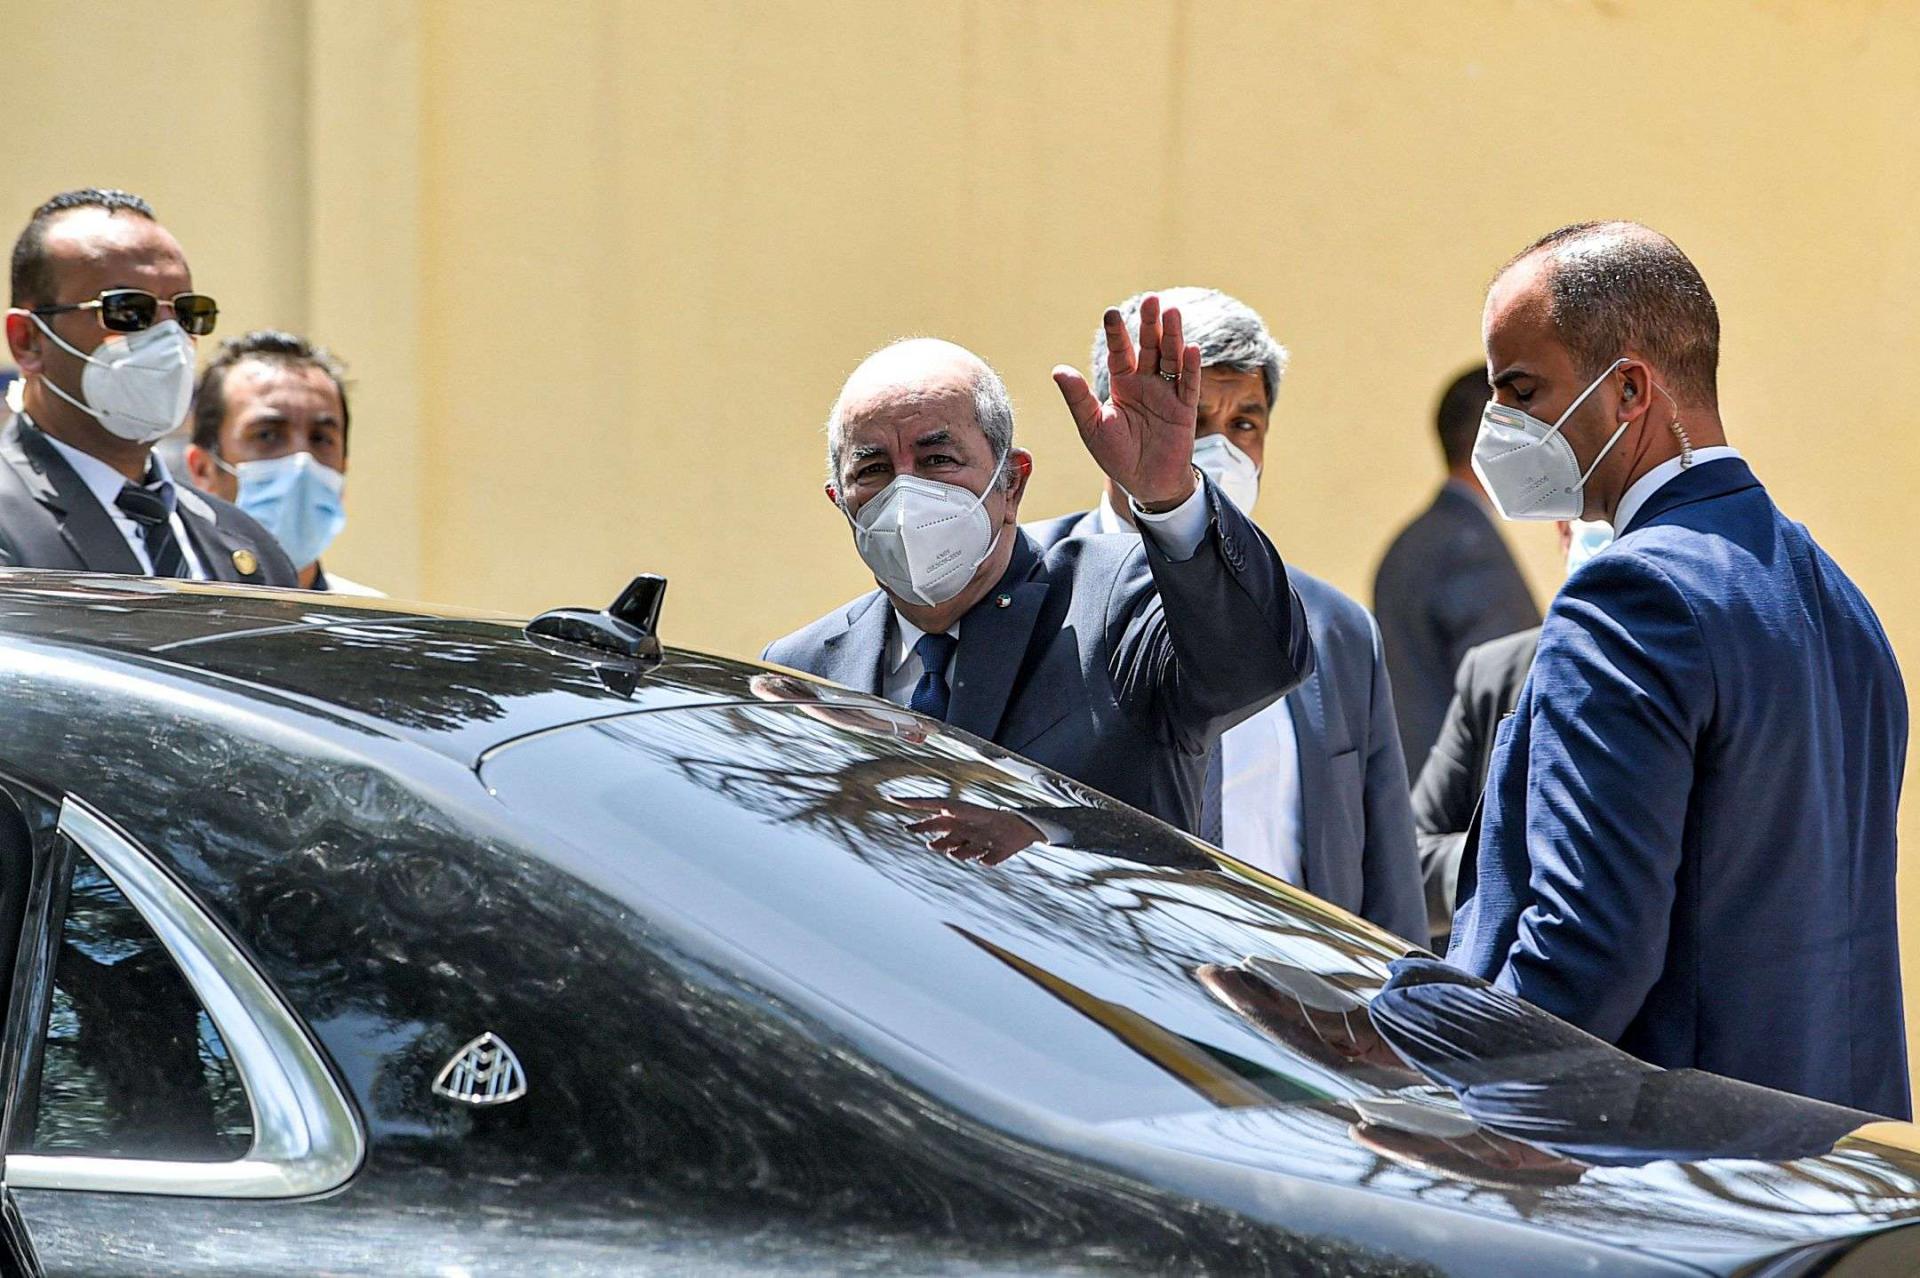 الرئيس الجزائري عبدالمجيد تبون يلوح بيده بعد إنهائه التصويت في الانتخابات